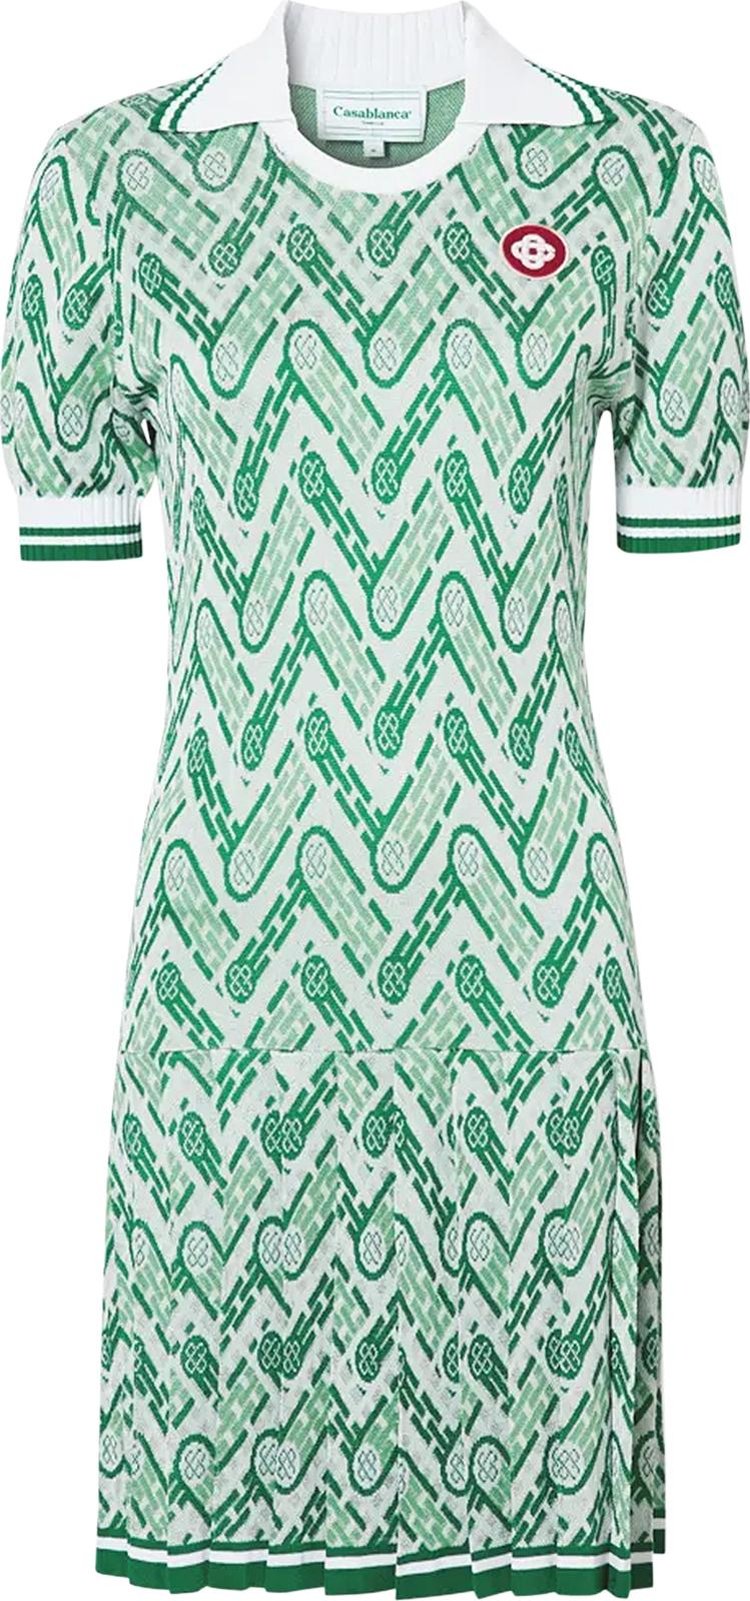 Casablanca Tennis Dress 'Green'